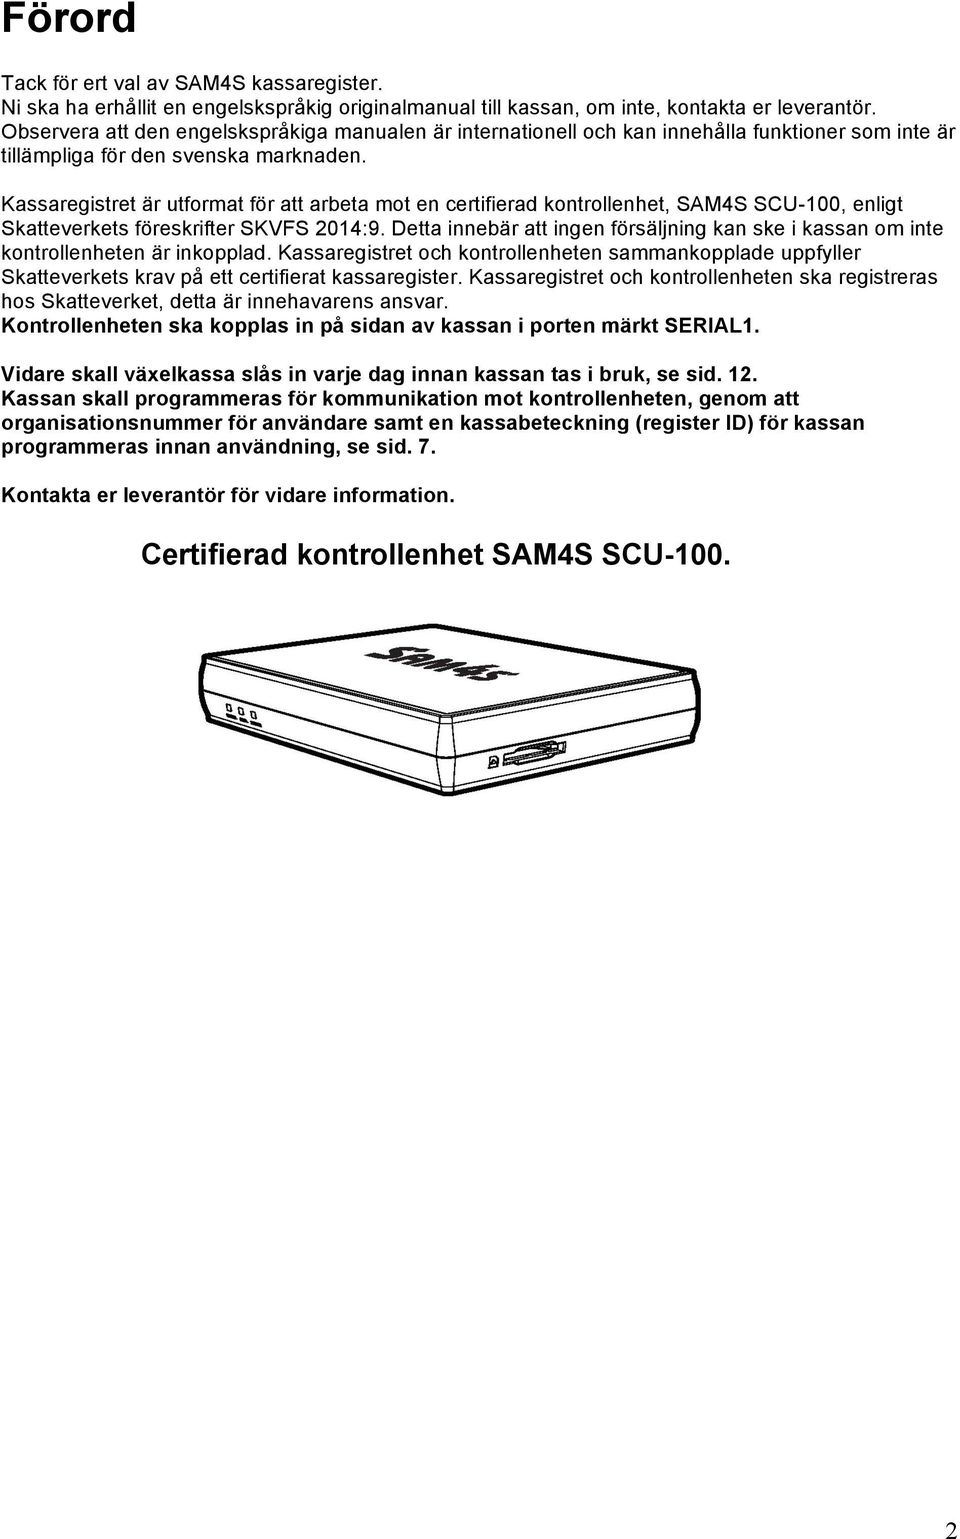 Kassaregistret är utformat för att arbeta mot en certifierad kontrollenhet, SAM4S SCU-100, enligt Skatteverkets föreskrifter SKVFS 2014:9.